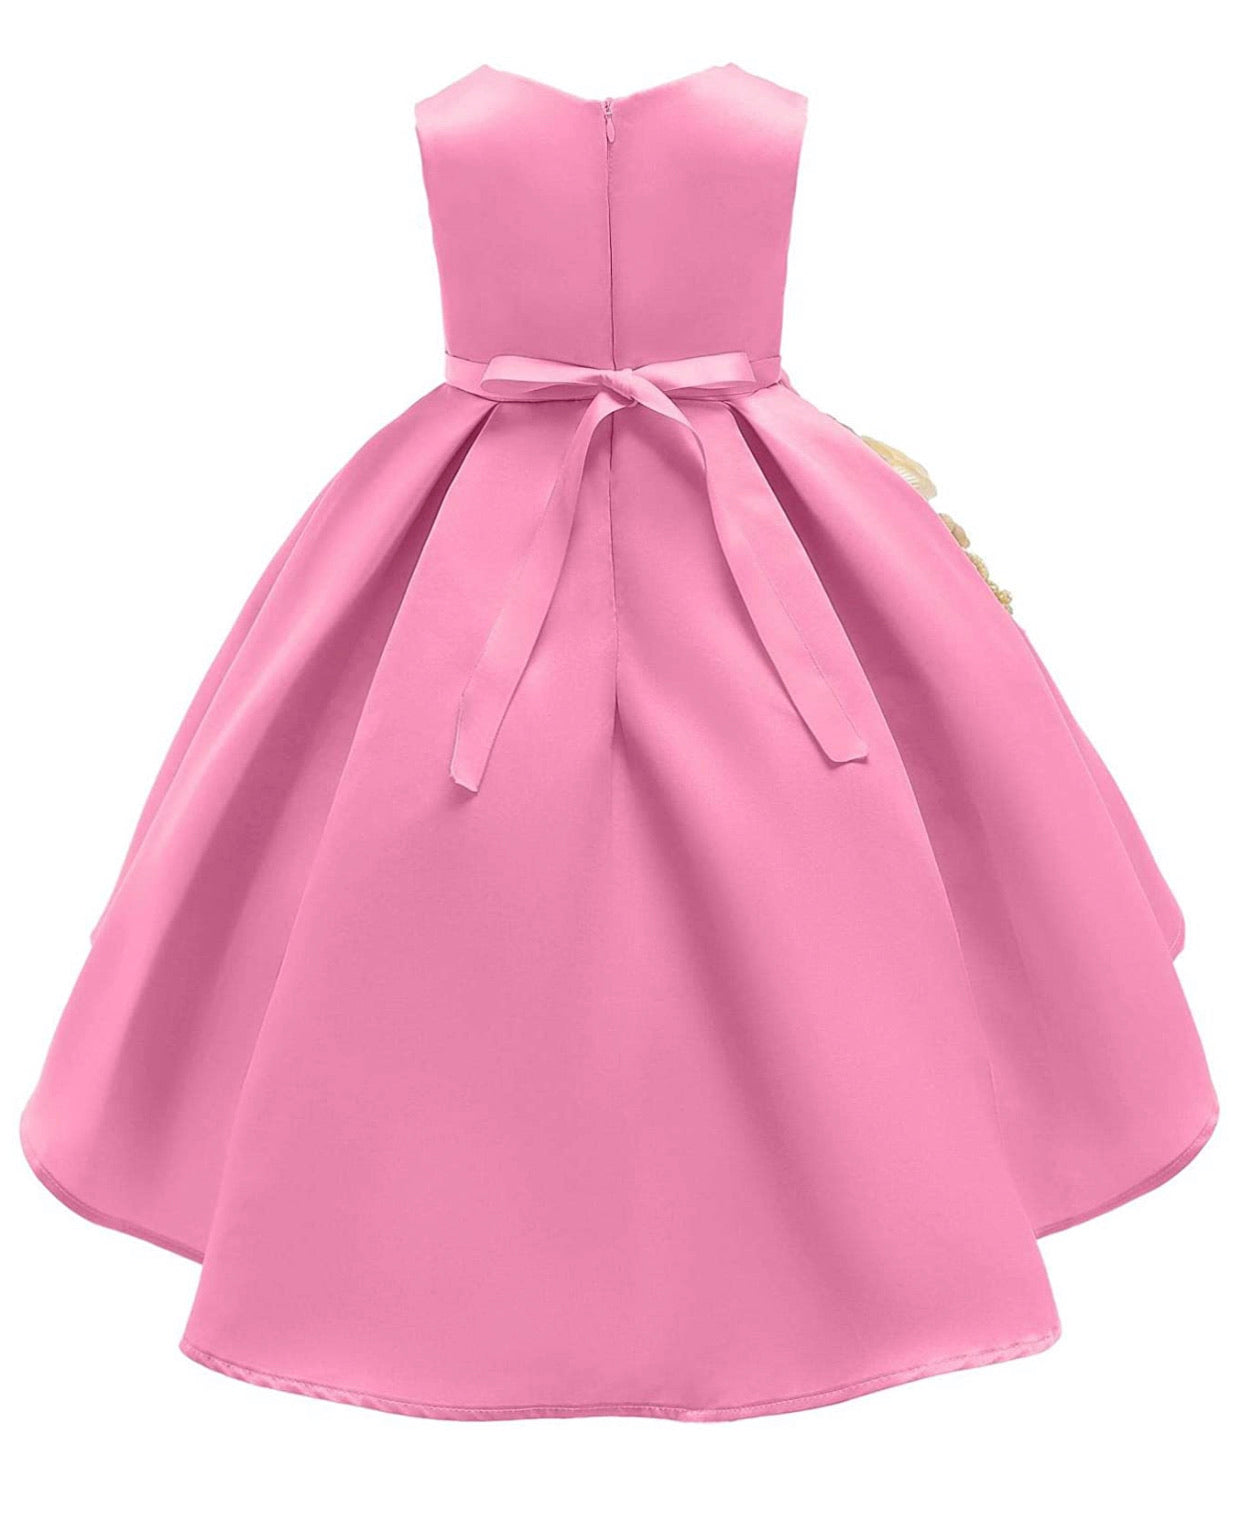 Lovely Full Flower Girl’s Dress, Sizes 2T - 9 (Pink)